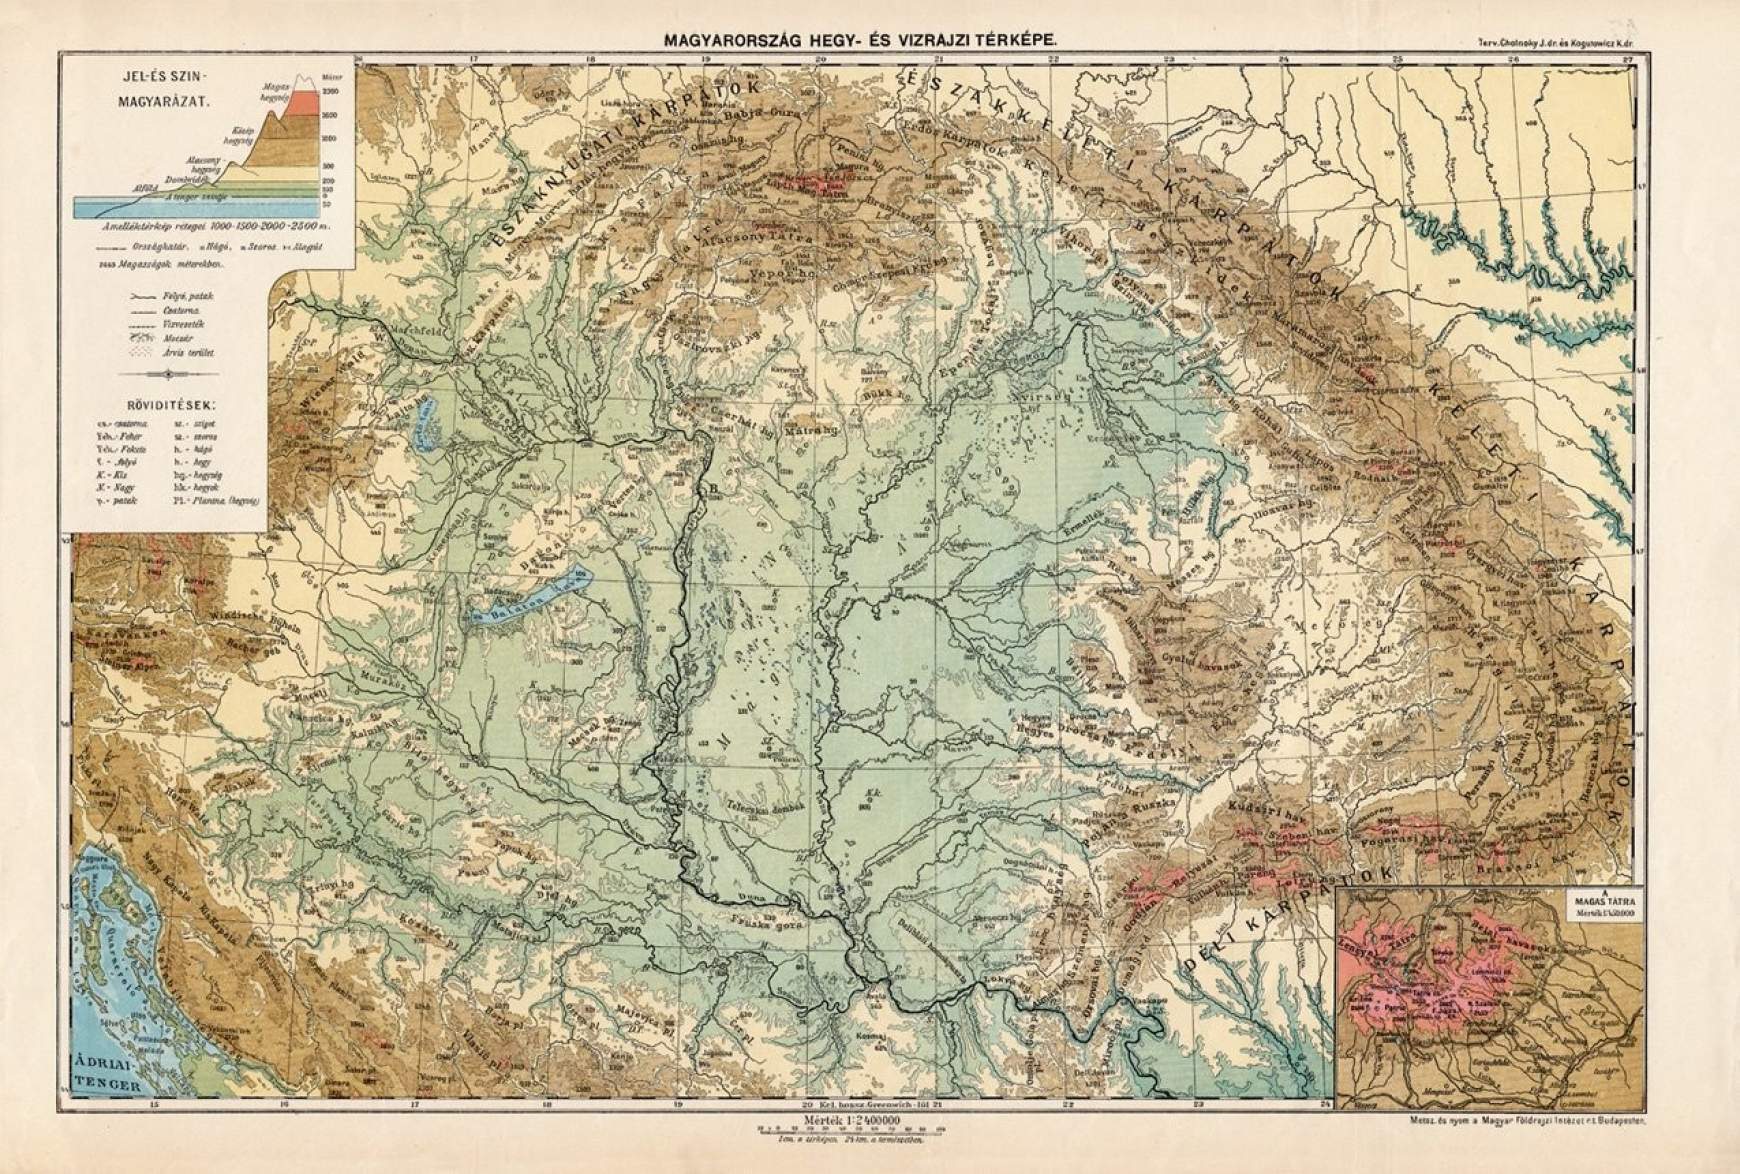 Magyarország hegyvízrajzi térképe